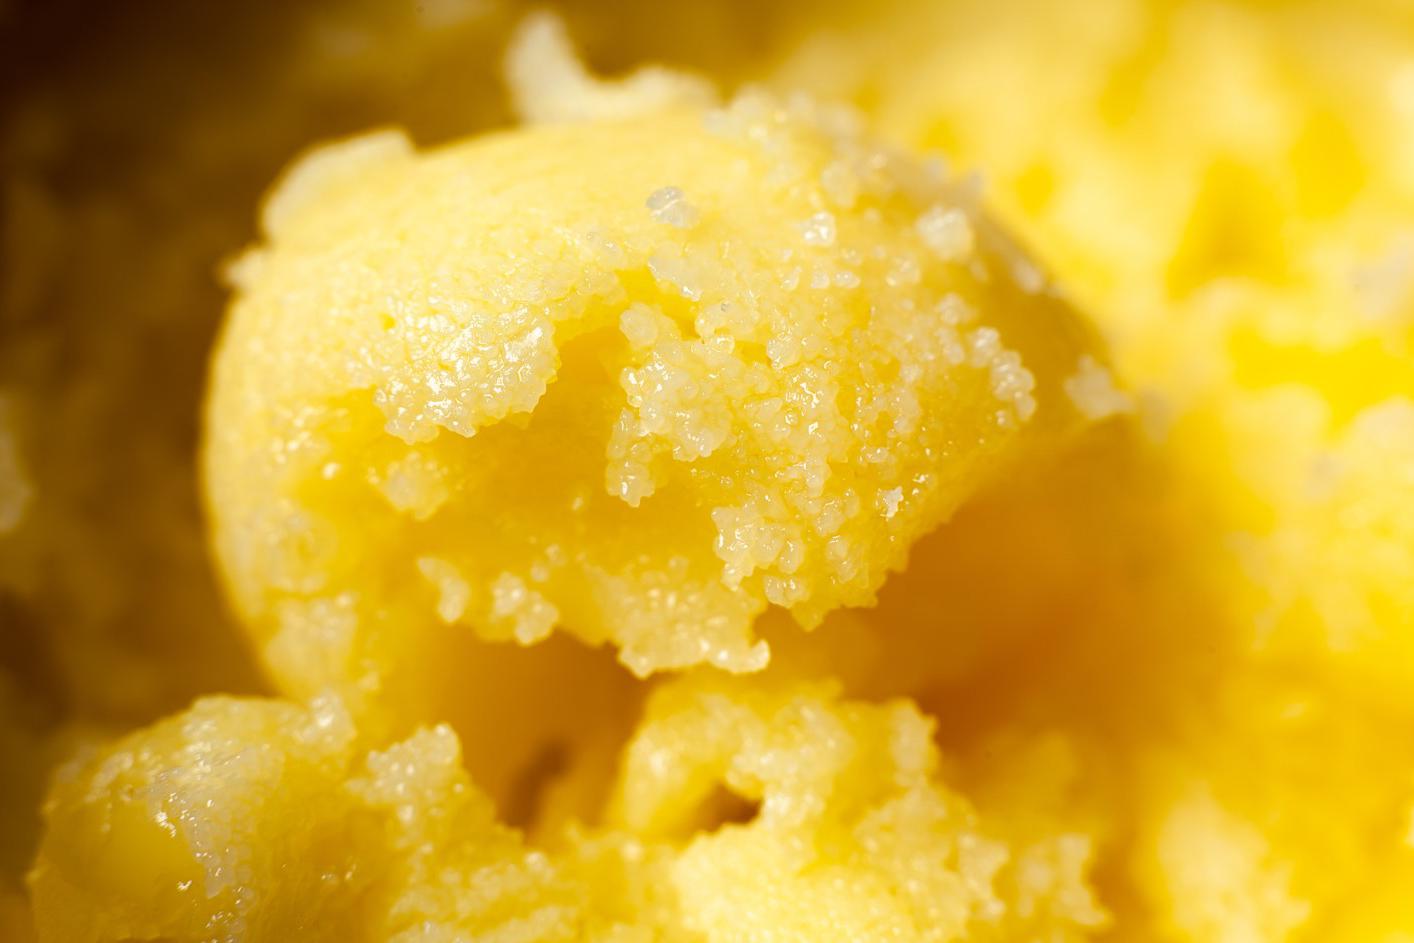 У масла гхи твердая и плотная консистенция, цвет нежно-желтый или медовый